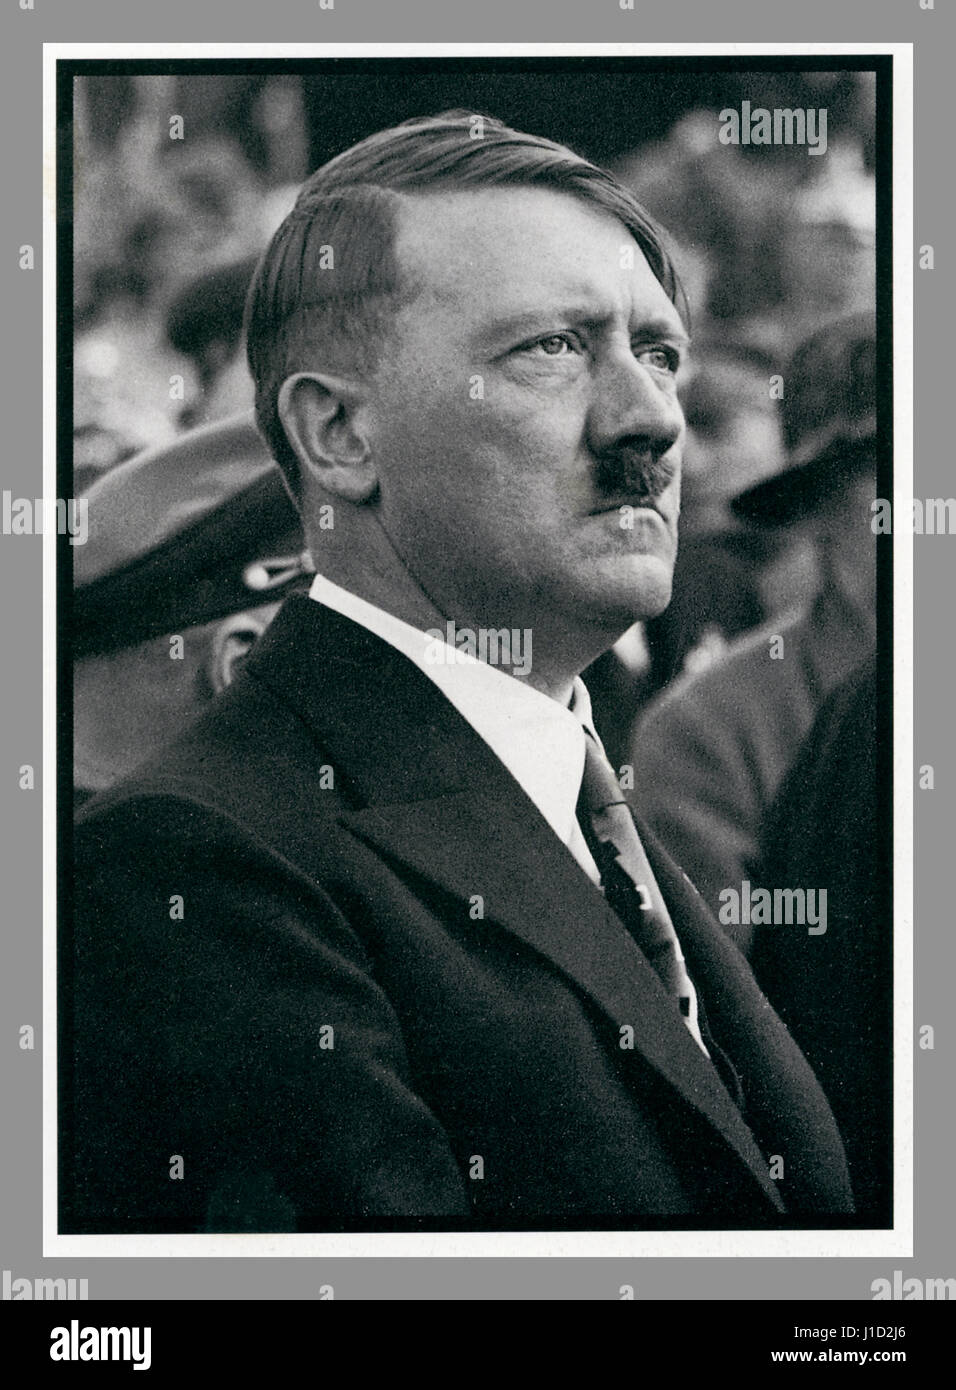 ADOLF HITLER in Zivilkleidung aus den 1930er Jahren, Reportage-Propaganda-Bild von Adolf Hitler bei einer Nazi-Party-Rallye in Zivilkleidung Stockfoto